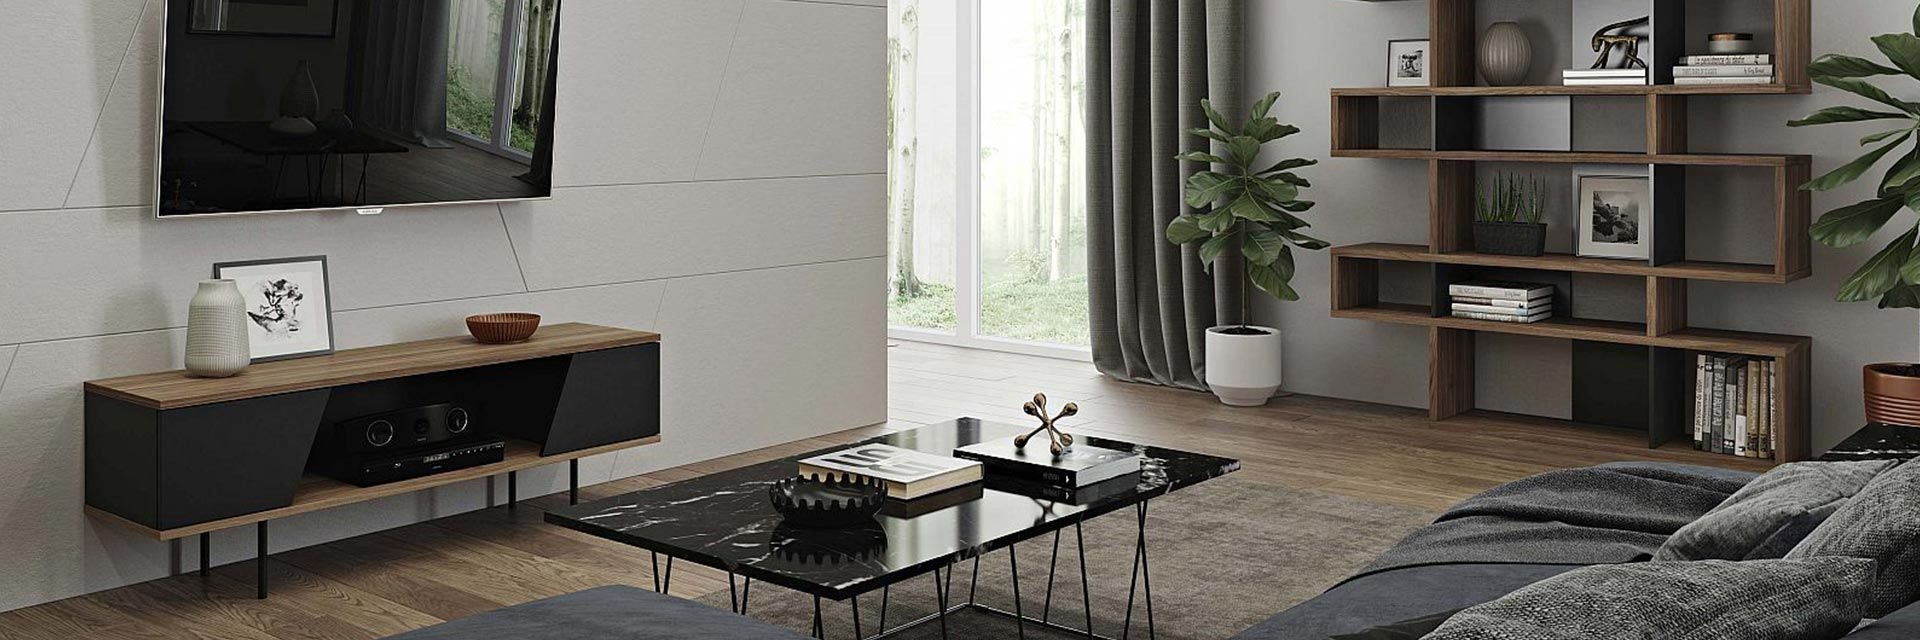 soggiorno cucina per sala da pranzo 100 cm nero mobile mobile moderno per TV con mensole HO-Cool mobiletto portaoggetti 